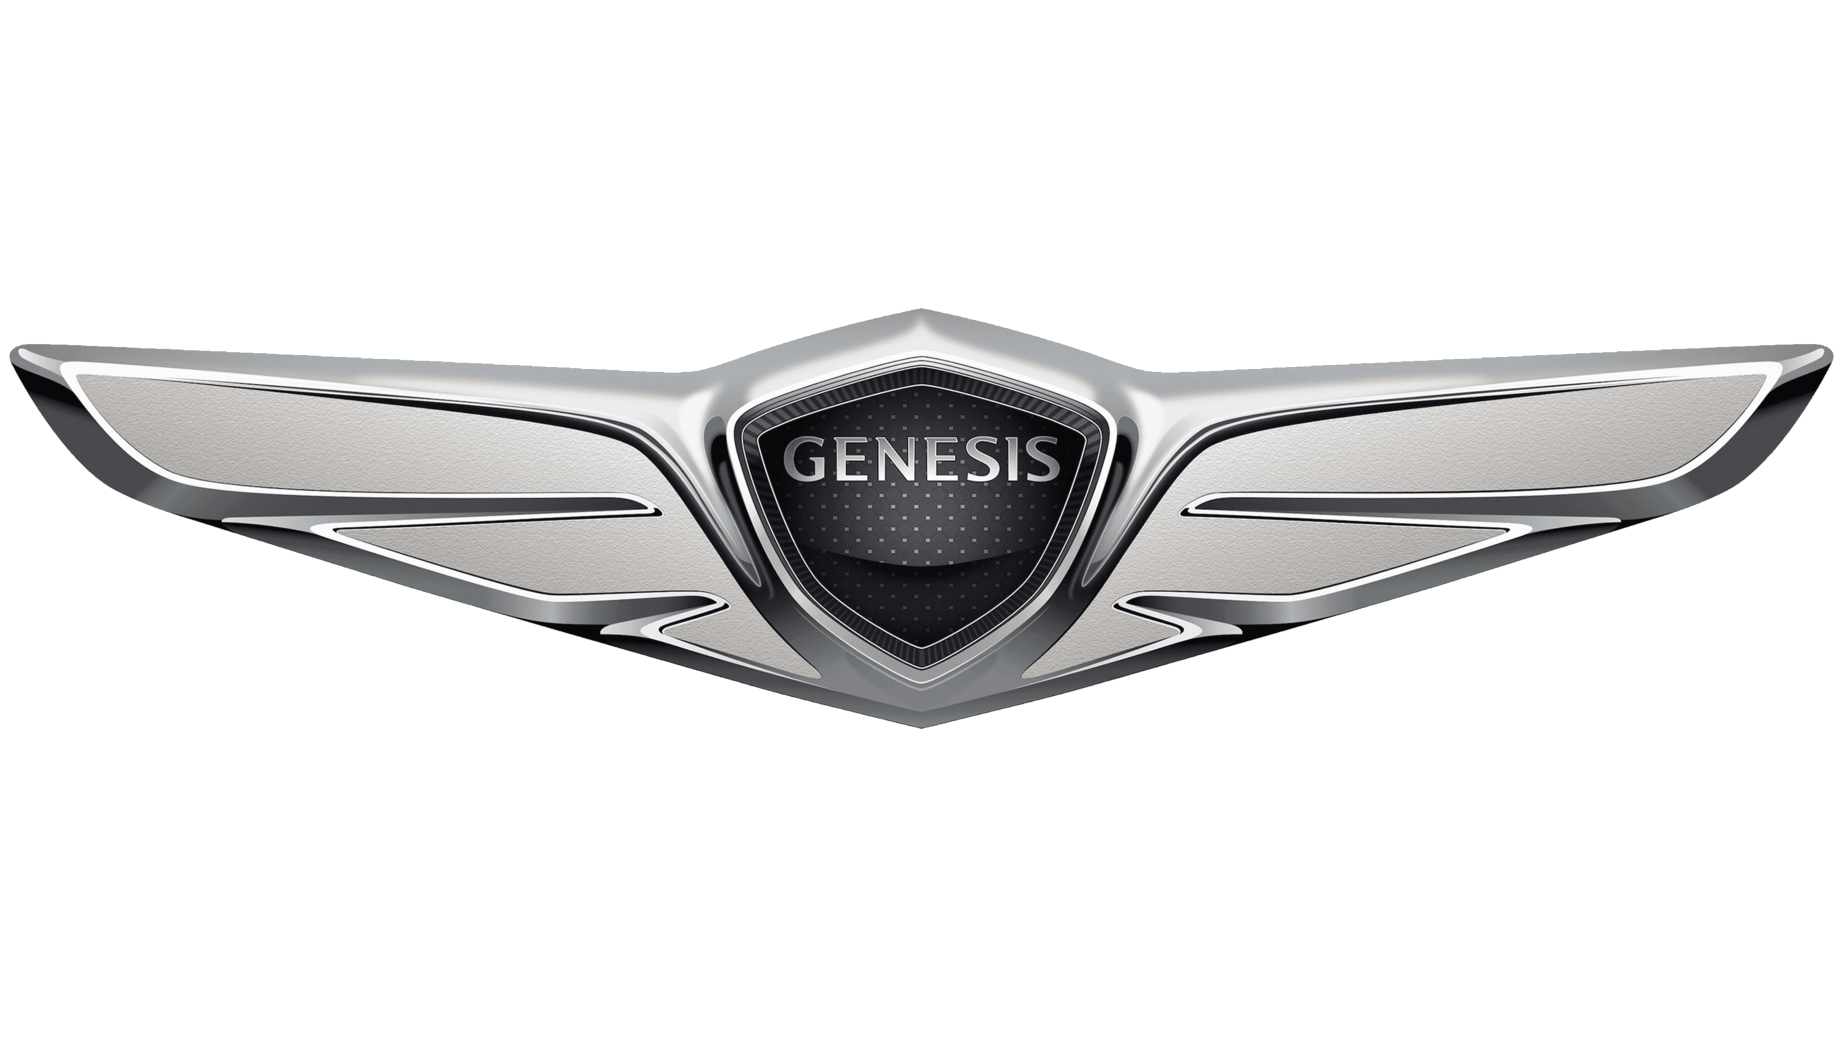 Genesis motors sign 2015 2020